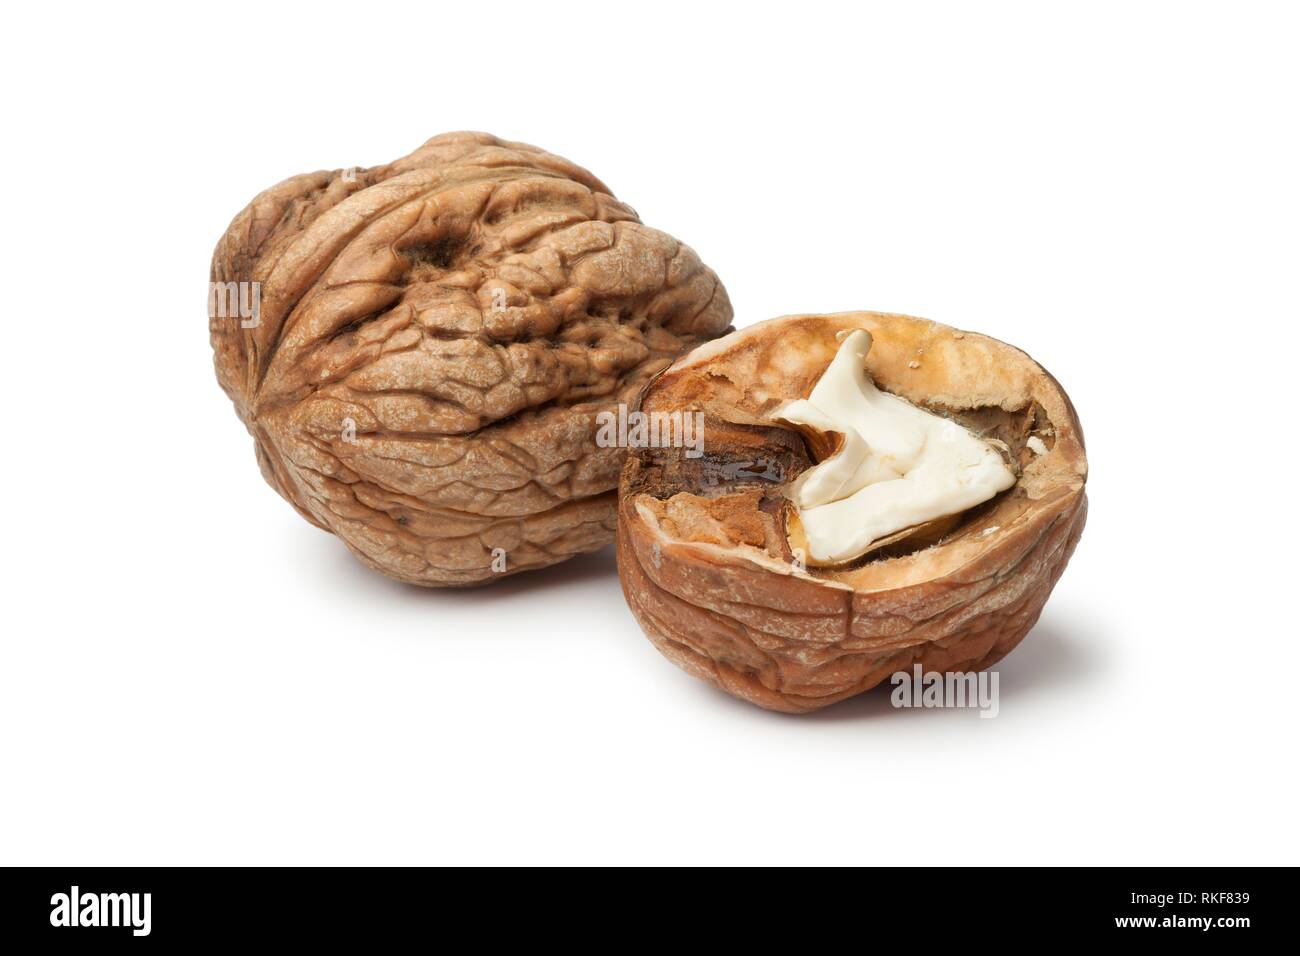 Whole and half wet walnut on white background. Stock Photo